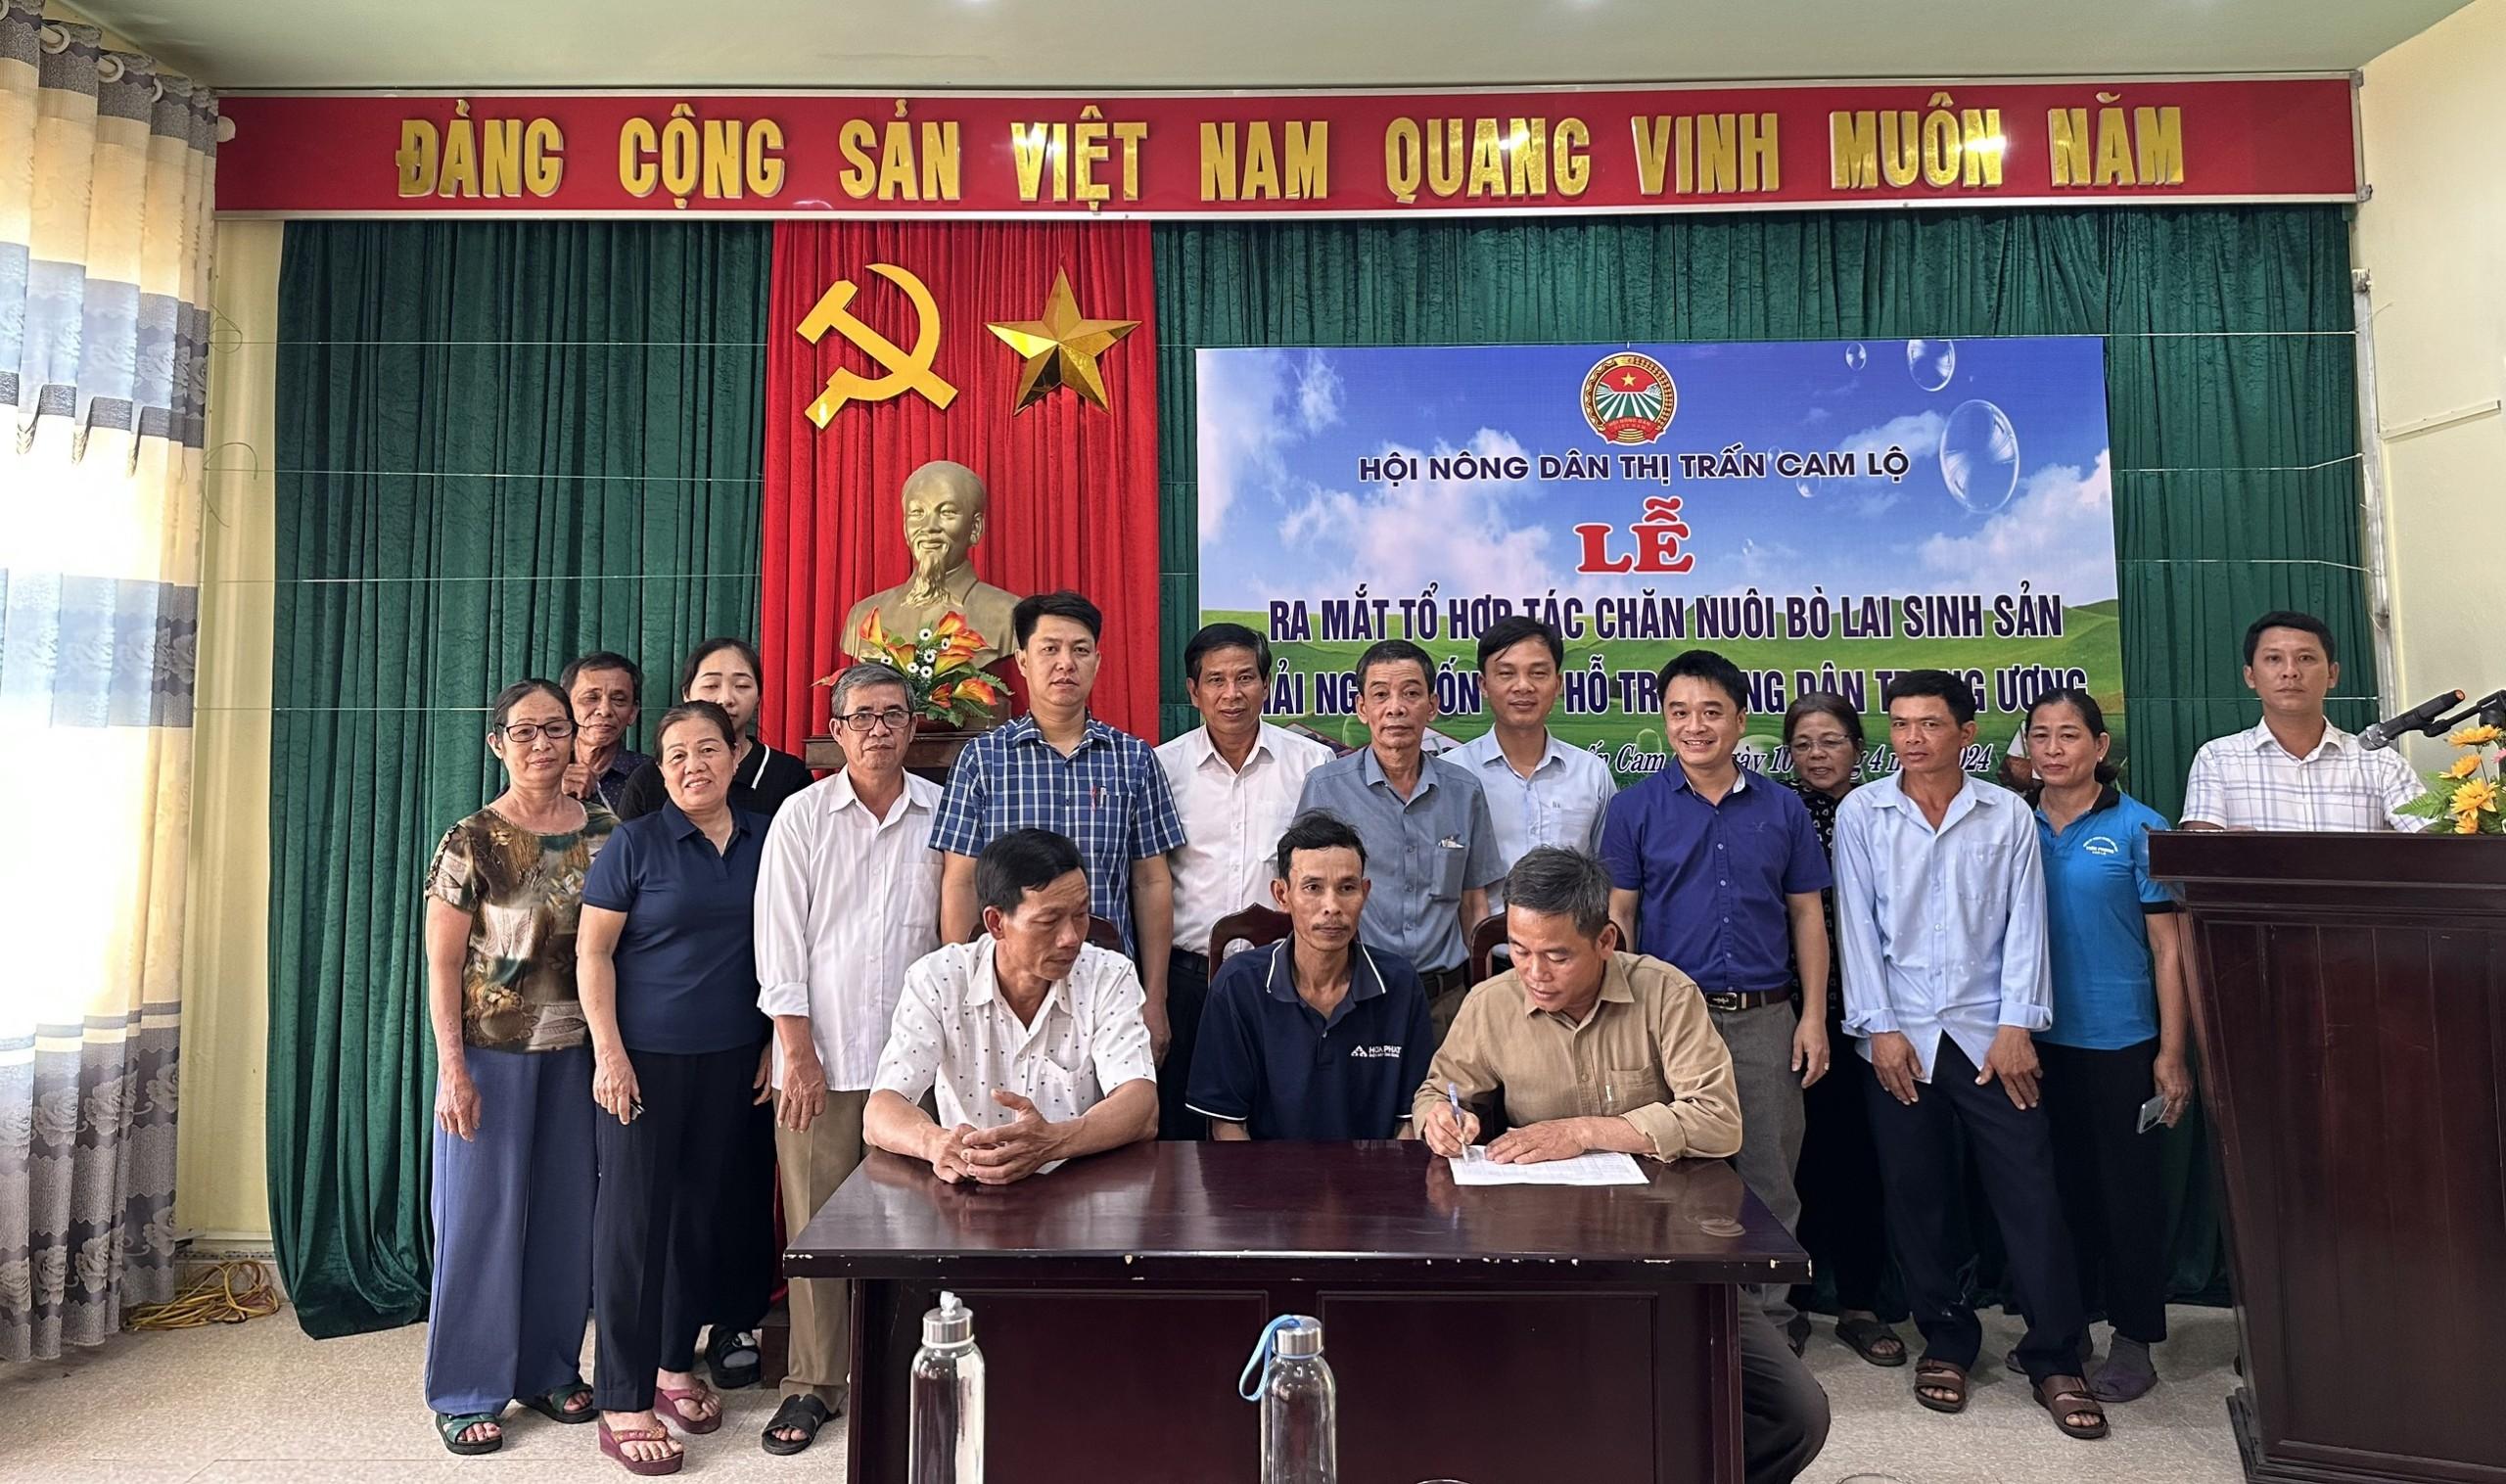 Hội Nông dân thị trấn Cam Lộ tổ chức buổi Lễ ra mắt Tổ hợp tác chăn nuôi bò Lai sinh sản và giải ngân nguồn vốn quỹ HTND Trung ương..